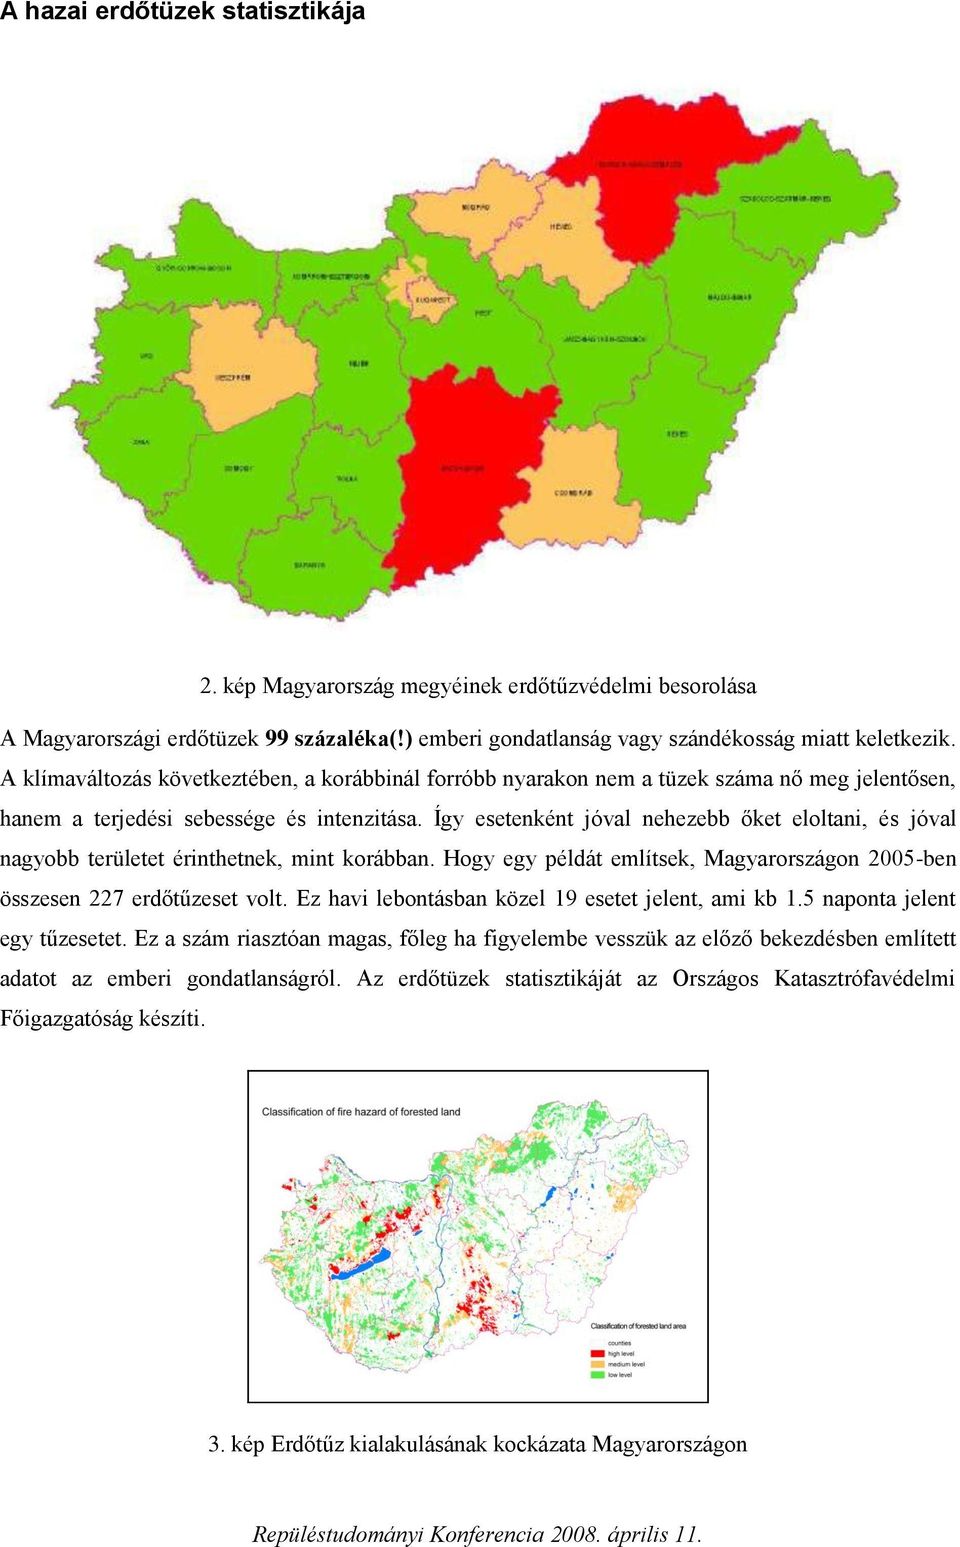 Így esetenként jóval nehezebb őket eloltani, és jóval nagyobb területet érinthetnek, mint korábban. Hogy egy példát említsek, Magyarországon 2005-ben összesen 227 erdőtűzeset volt.